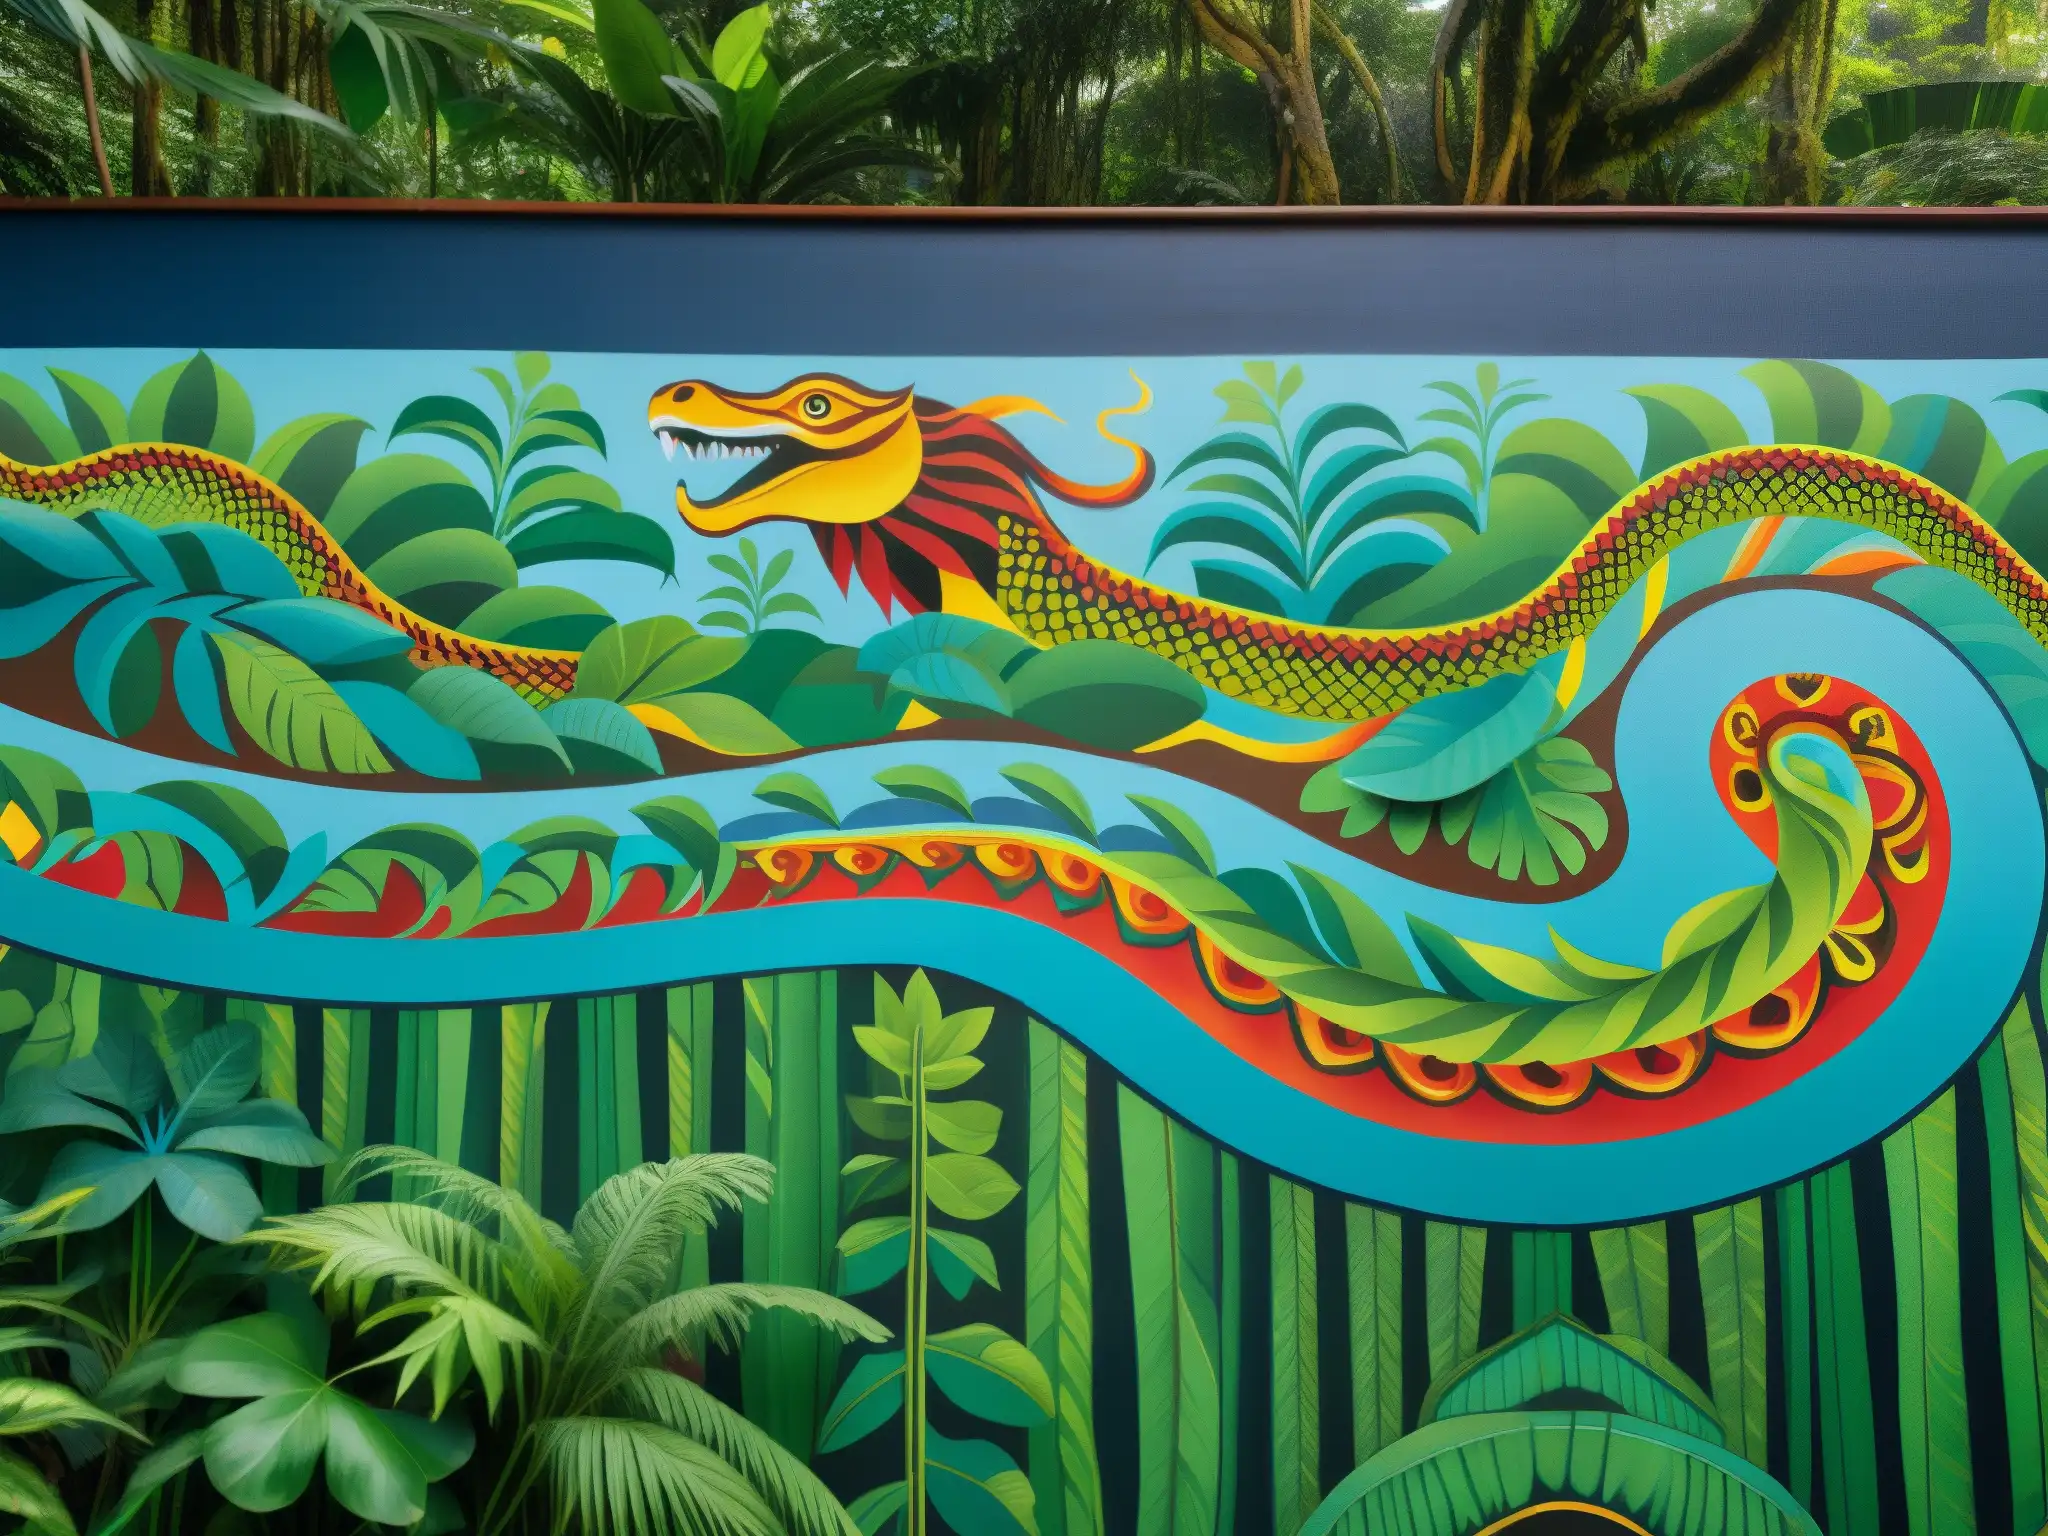 Vibrante mural del mito de la serpiente de siete cabezas en la Amazonía, reflejando la rica tradición narrativa y cultural de la región